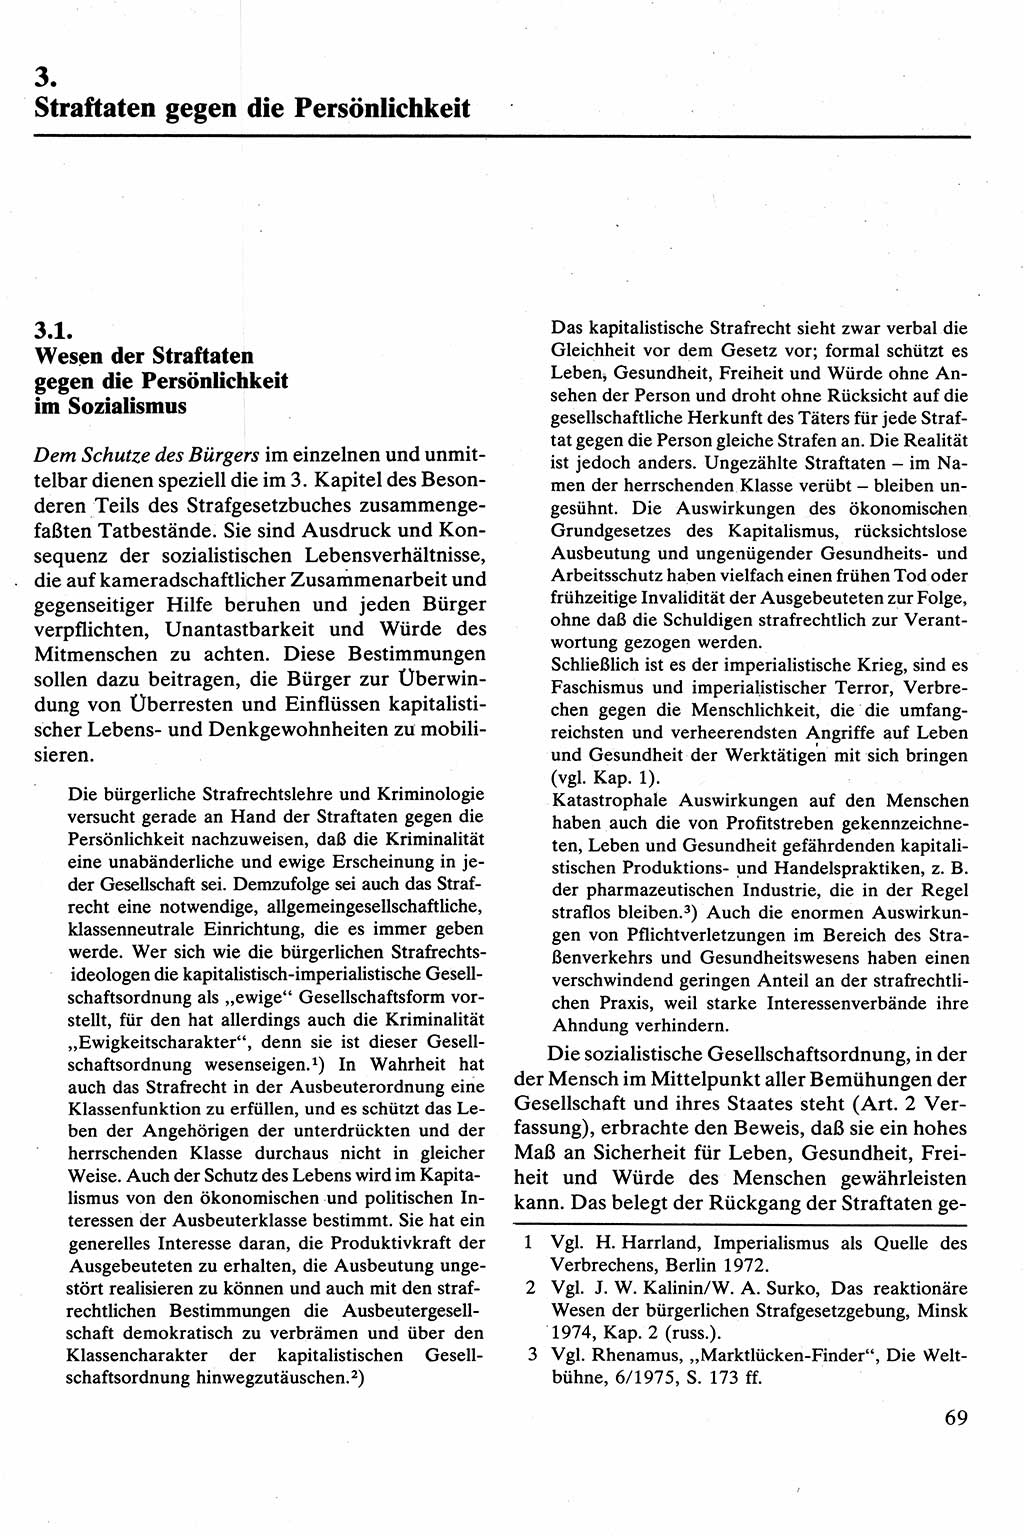 Strafrecht [Deutsche Demokratische Republik (DDR)], Besonderer Teil, Lehrbuch 1981, Seite 69 (Strafr. DDR BT Lb. 1981, S. 69)